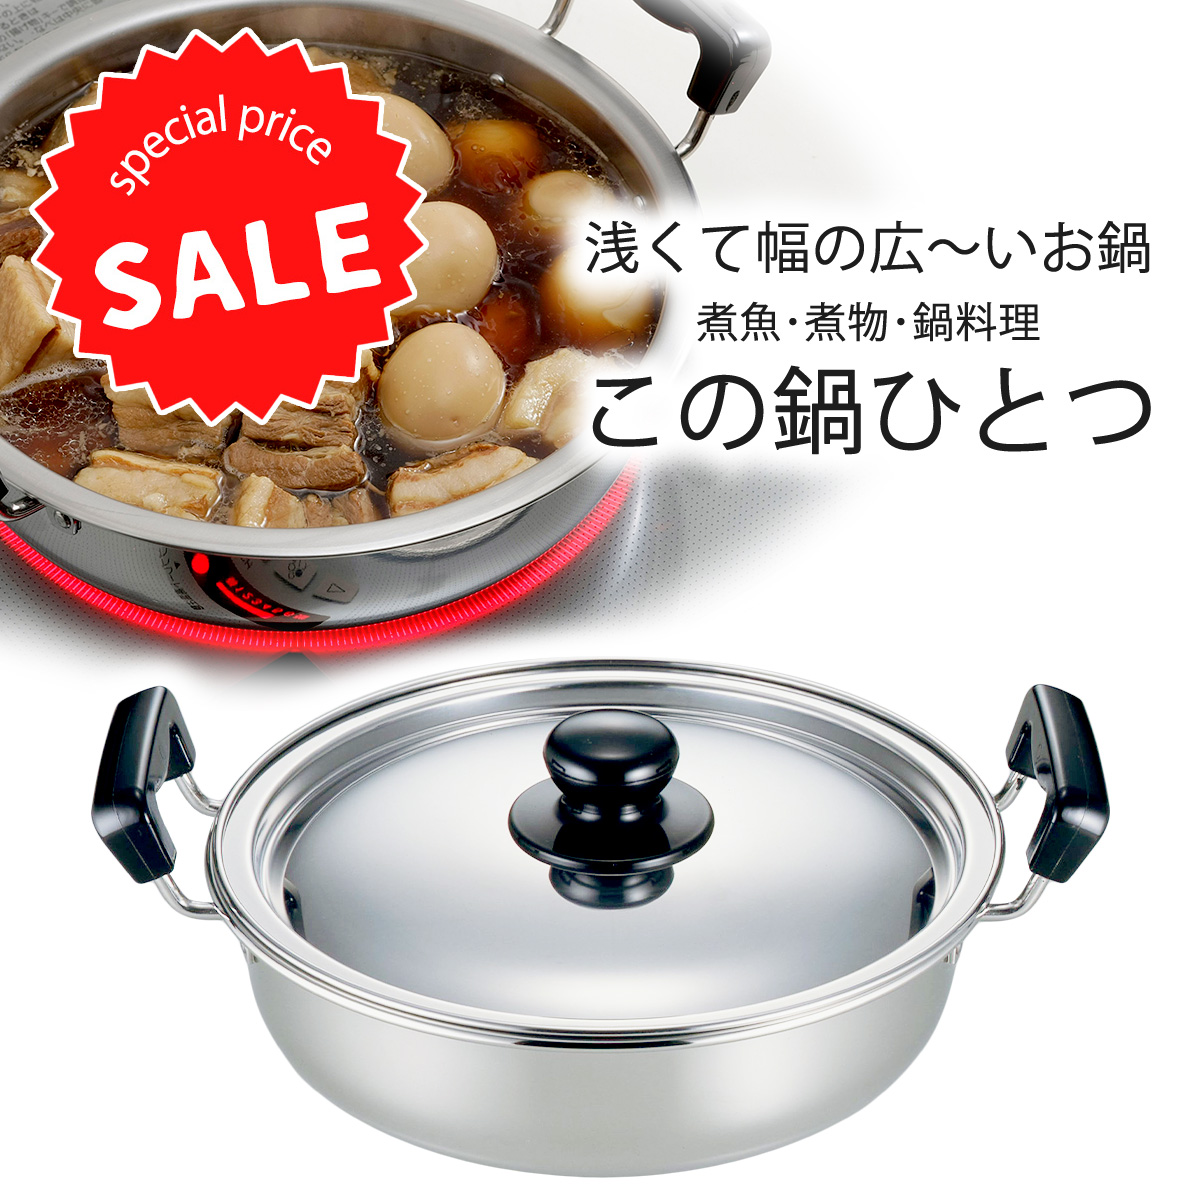 遠藤商事 TKG 湯煎式電気おでん鍋 8ッ切 本物品質の - 調理器具